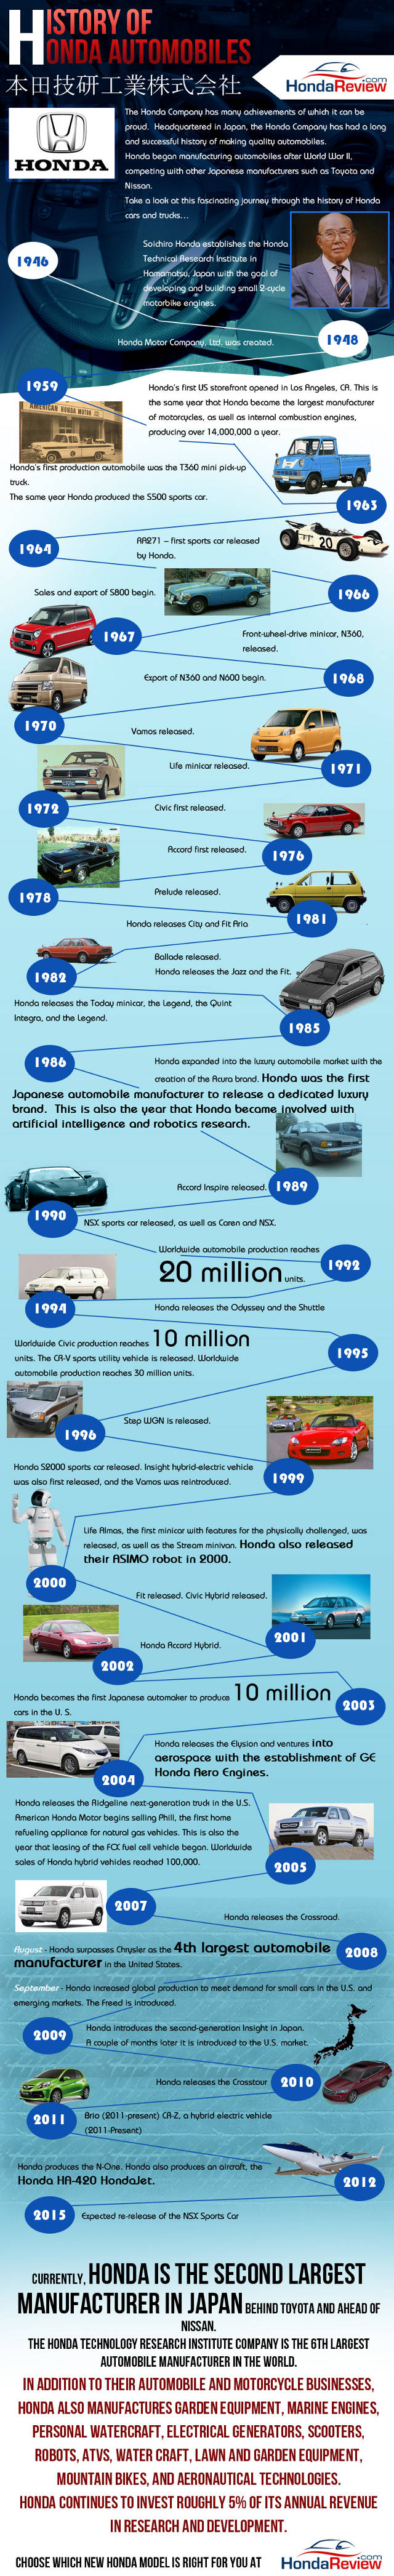 The History of Honda